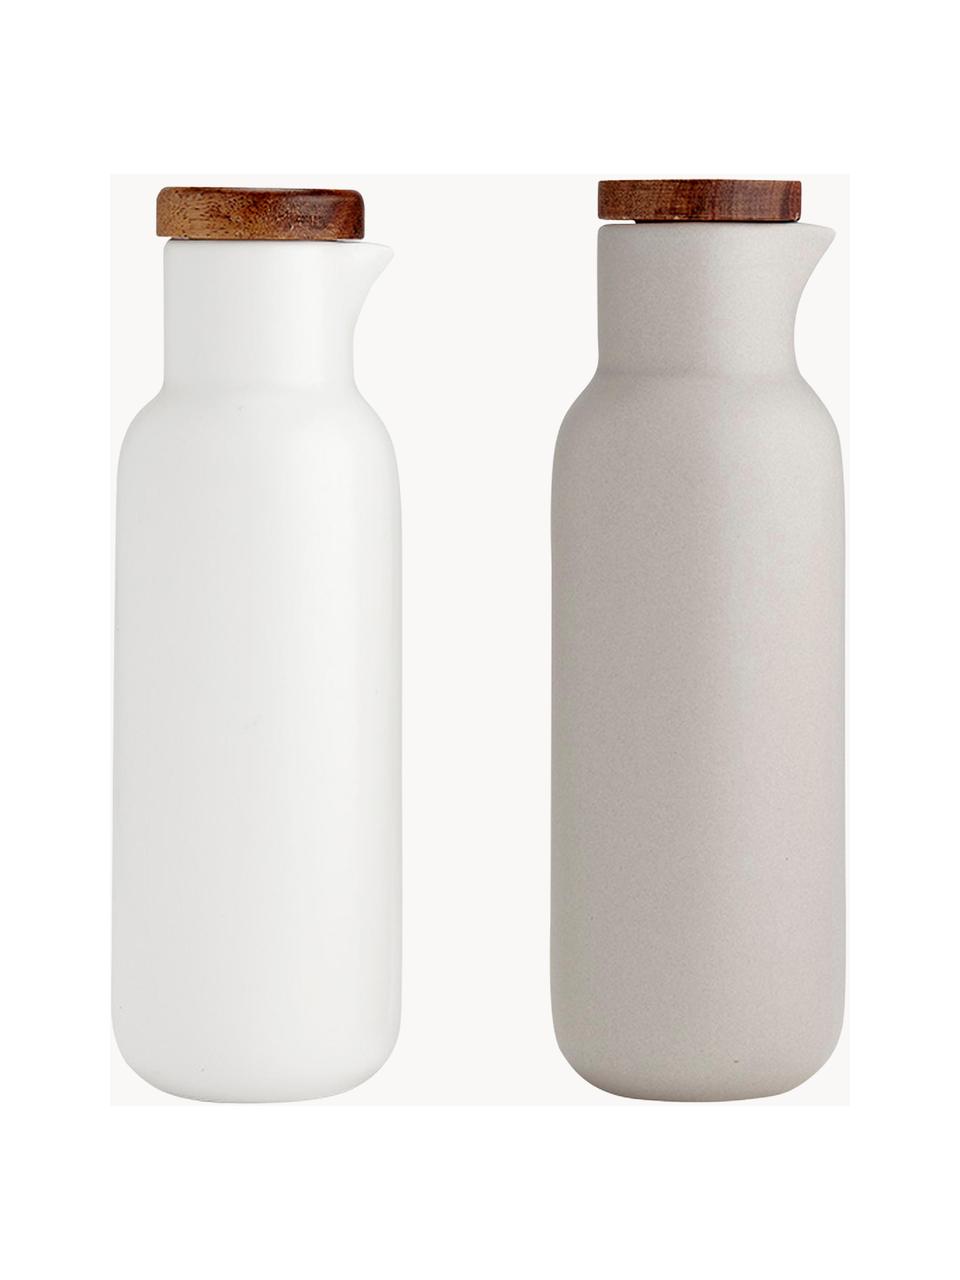 Essig- und Öl-Spender Essentials aus Porzellan und Akazienholz, 2er-Set, Weiß, Hellbeige, matt, Ø 6 x H 18 cm